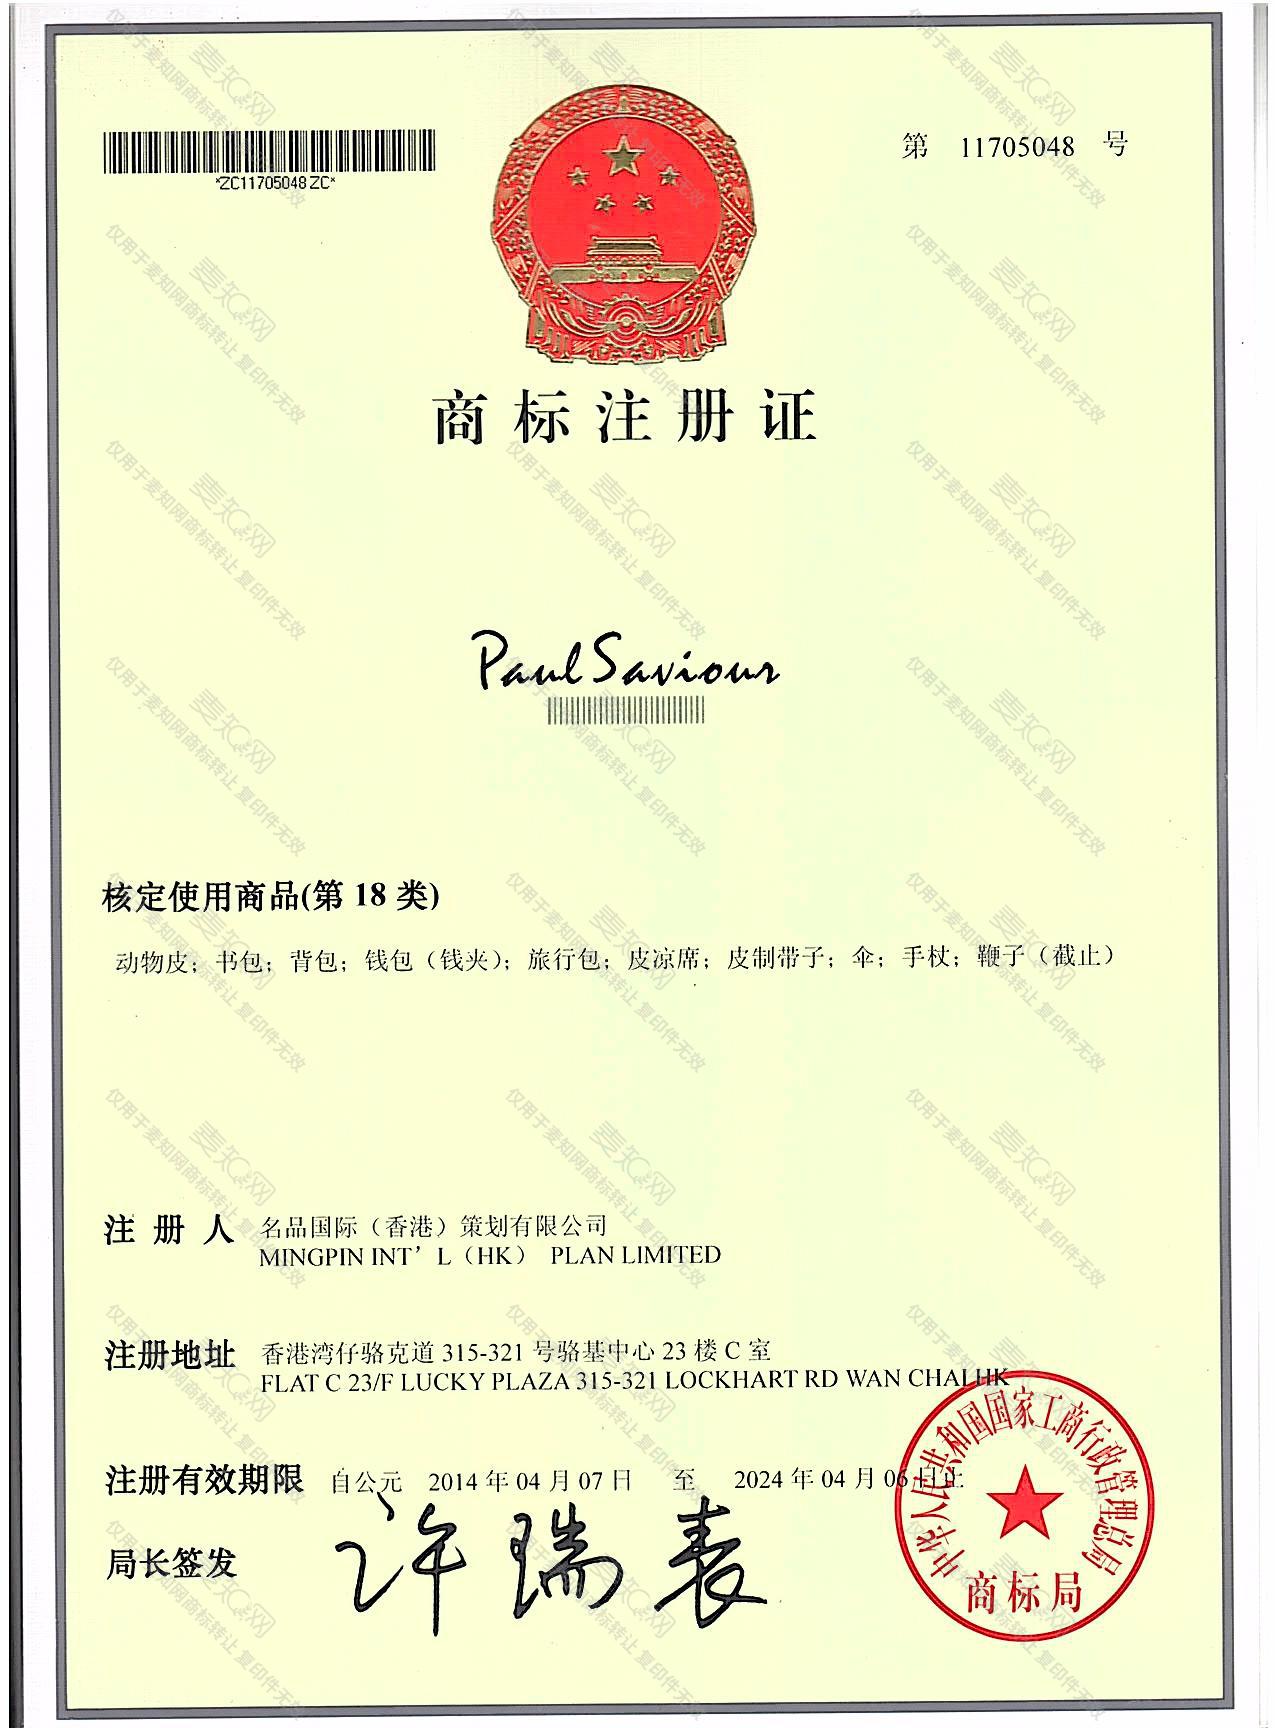 PAUL SAVIOUS注册证